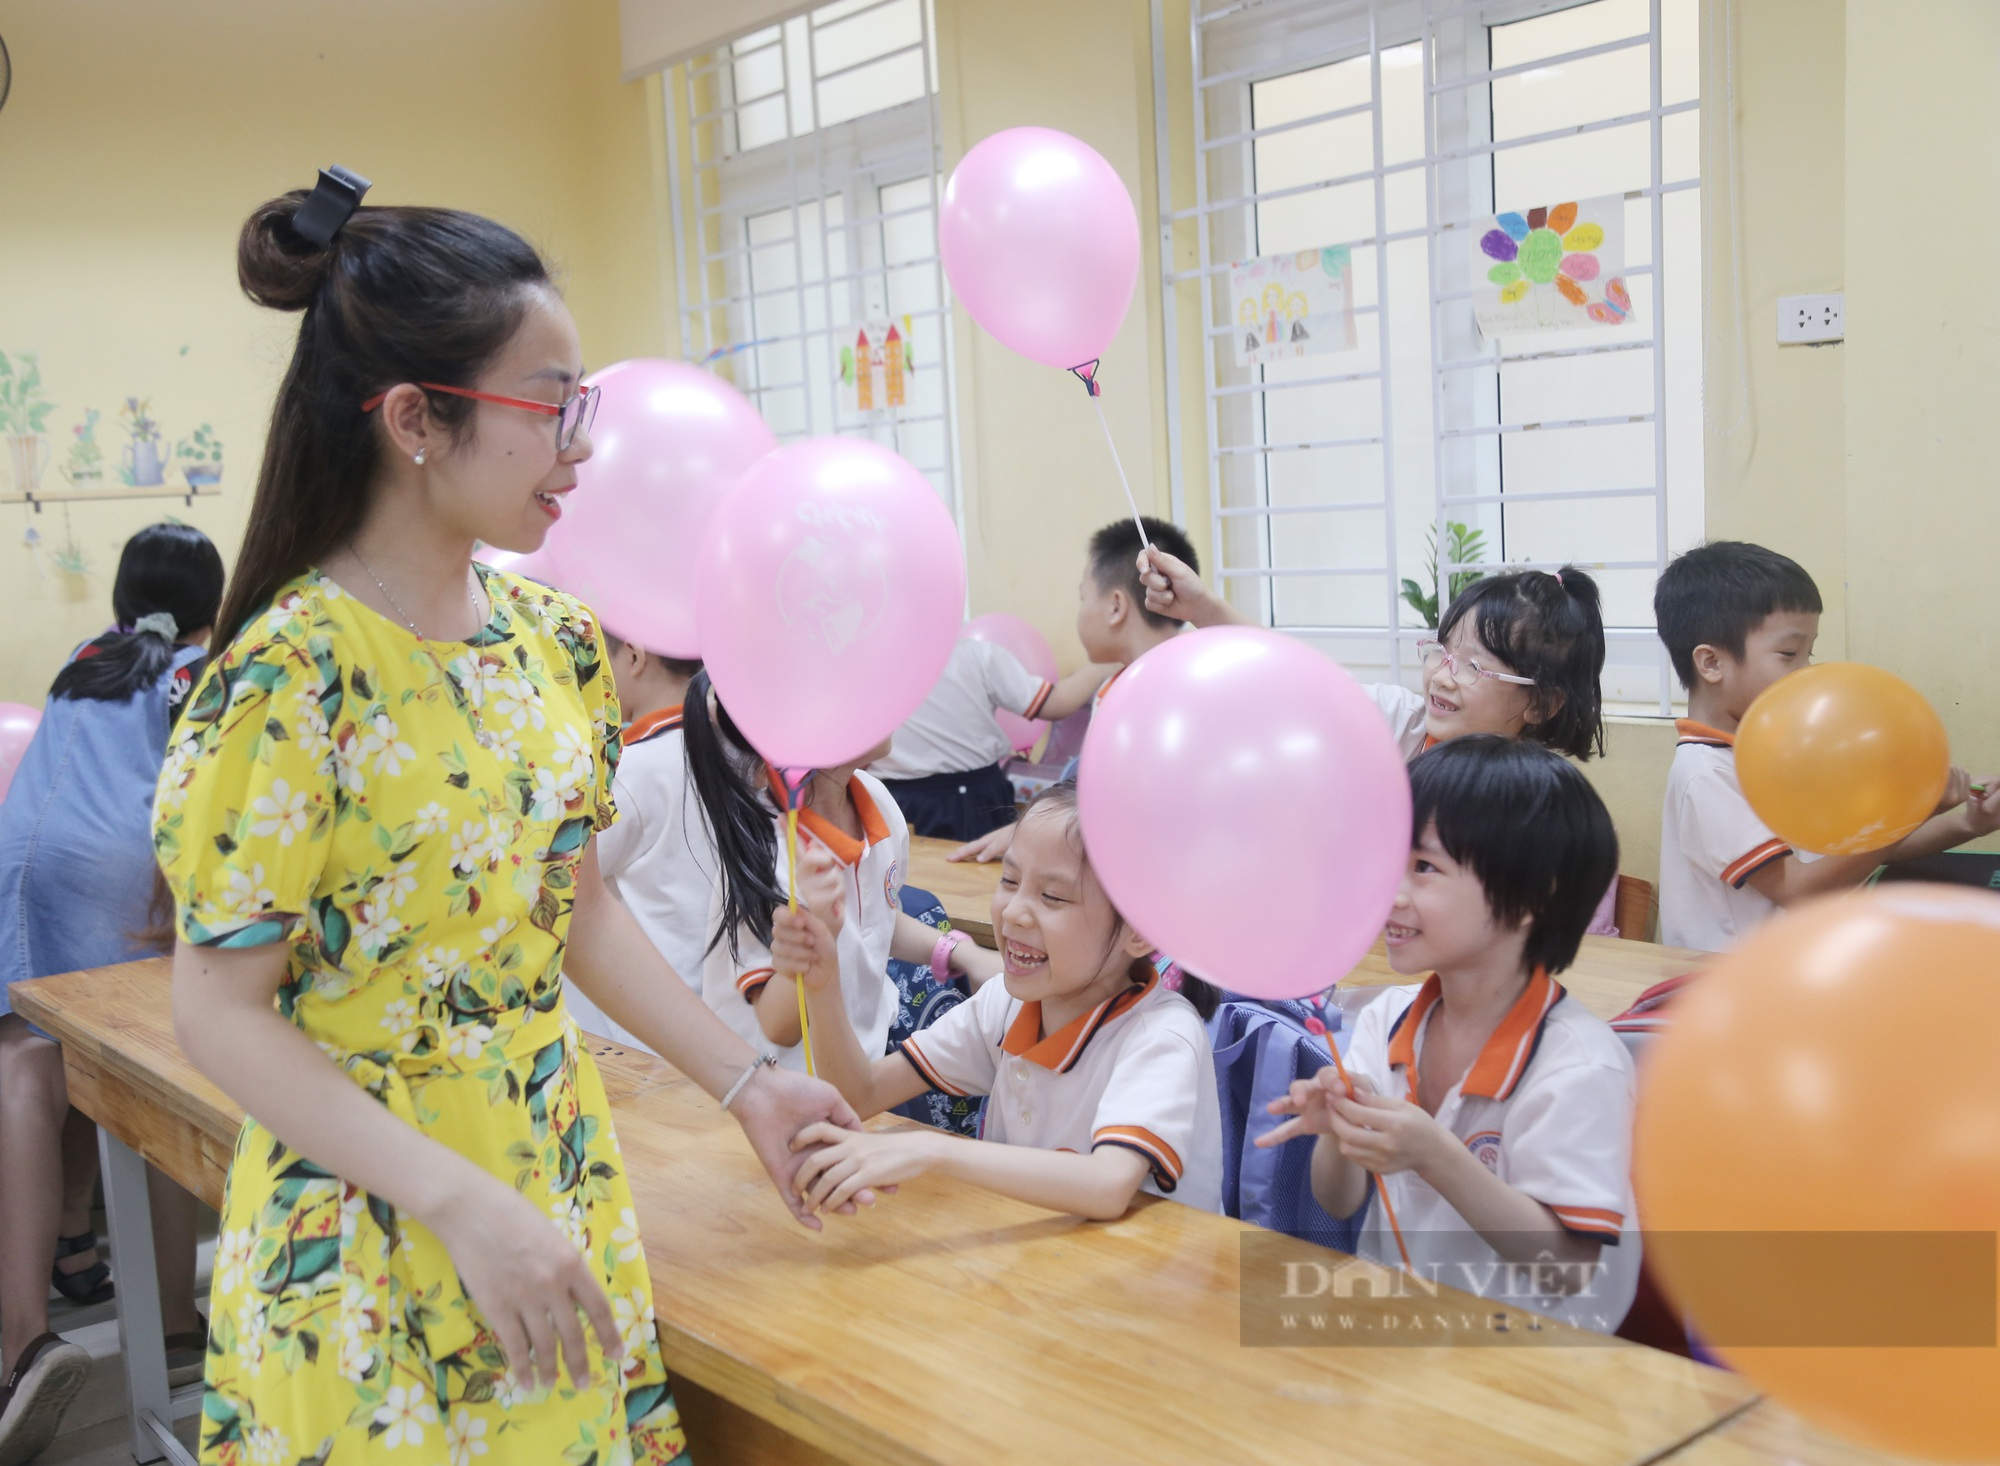 Ngày học cuối cùng đầy ắp kỷ niệm, học sinh Hà Nội chính thức nghỉ hè - Ảnh 11.